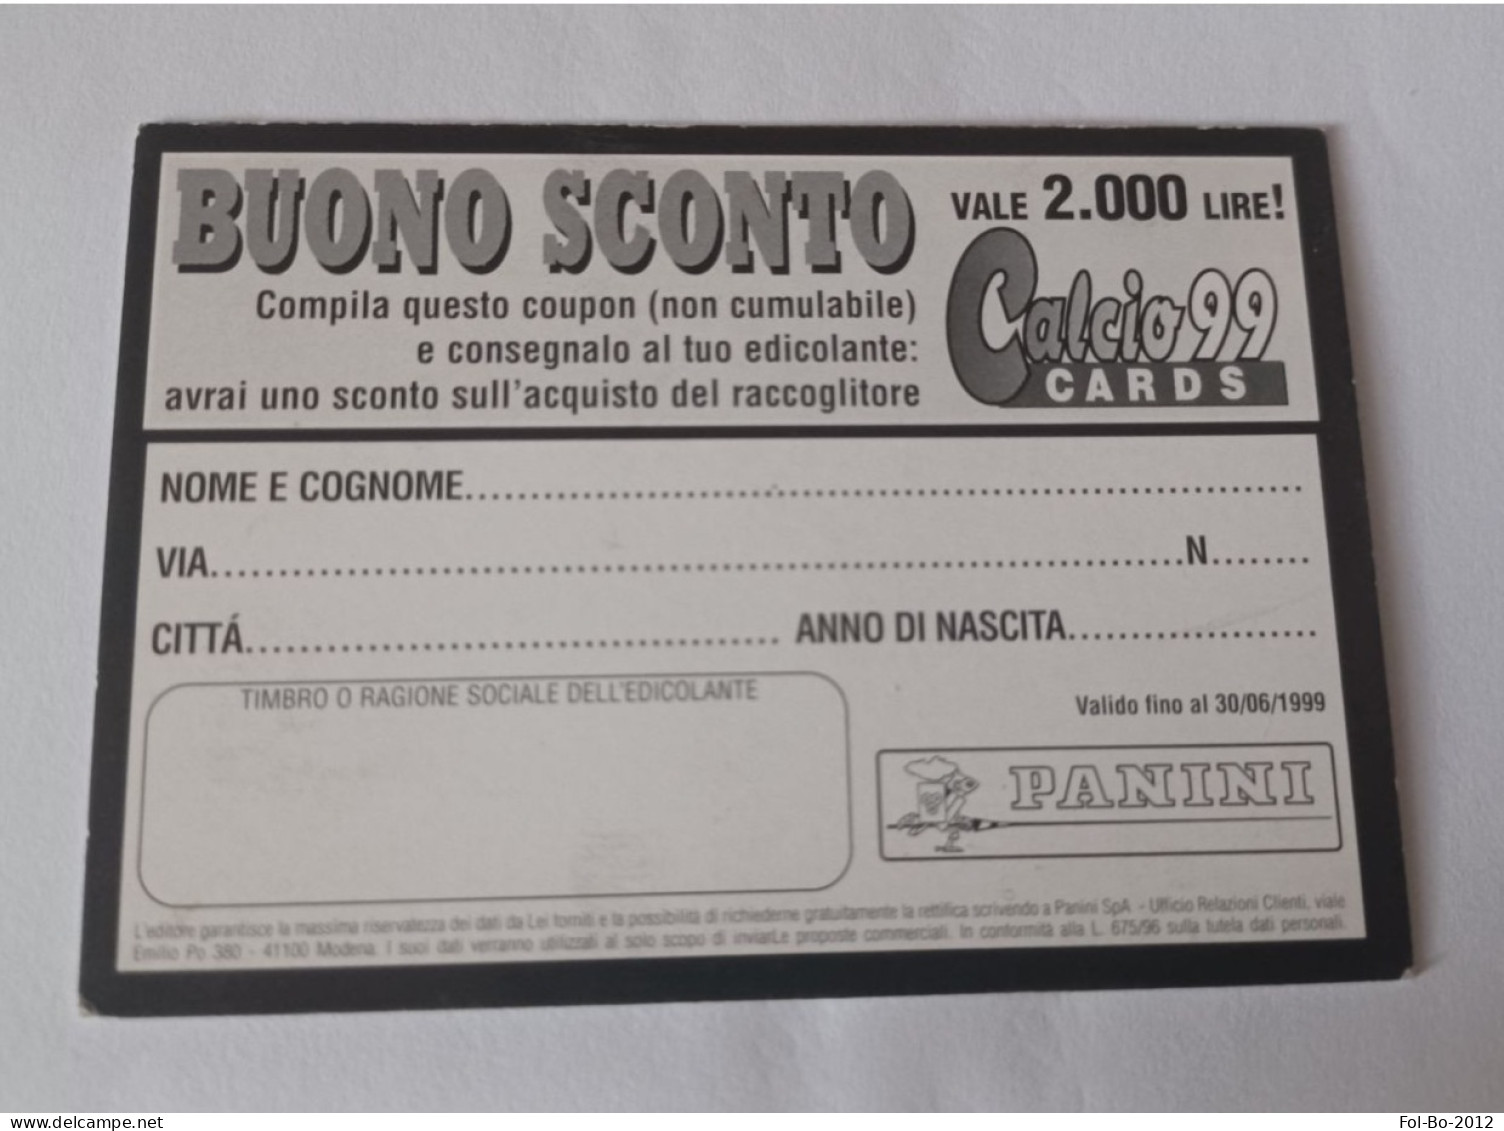 Baggio Calcio Calciatori 99 Card Panini Buono Sconto - Italian Edition